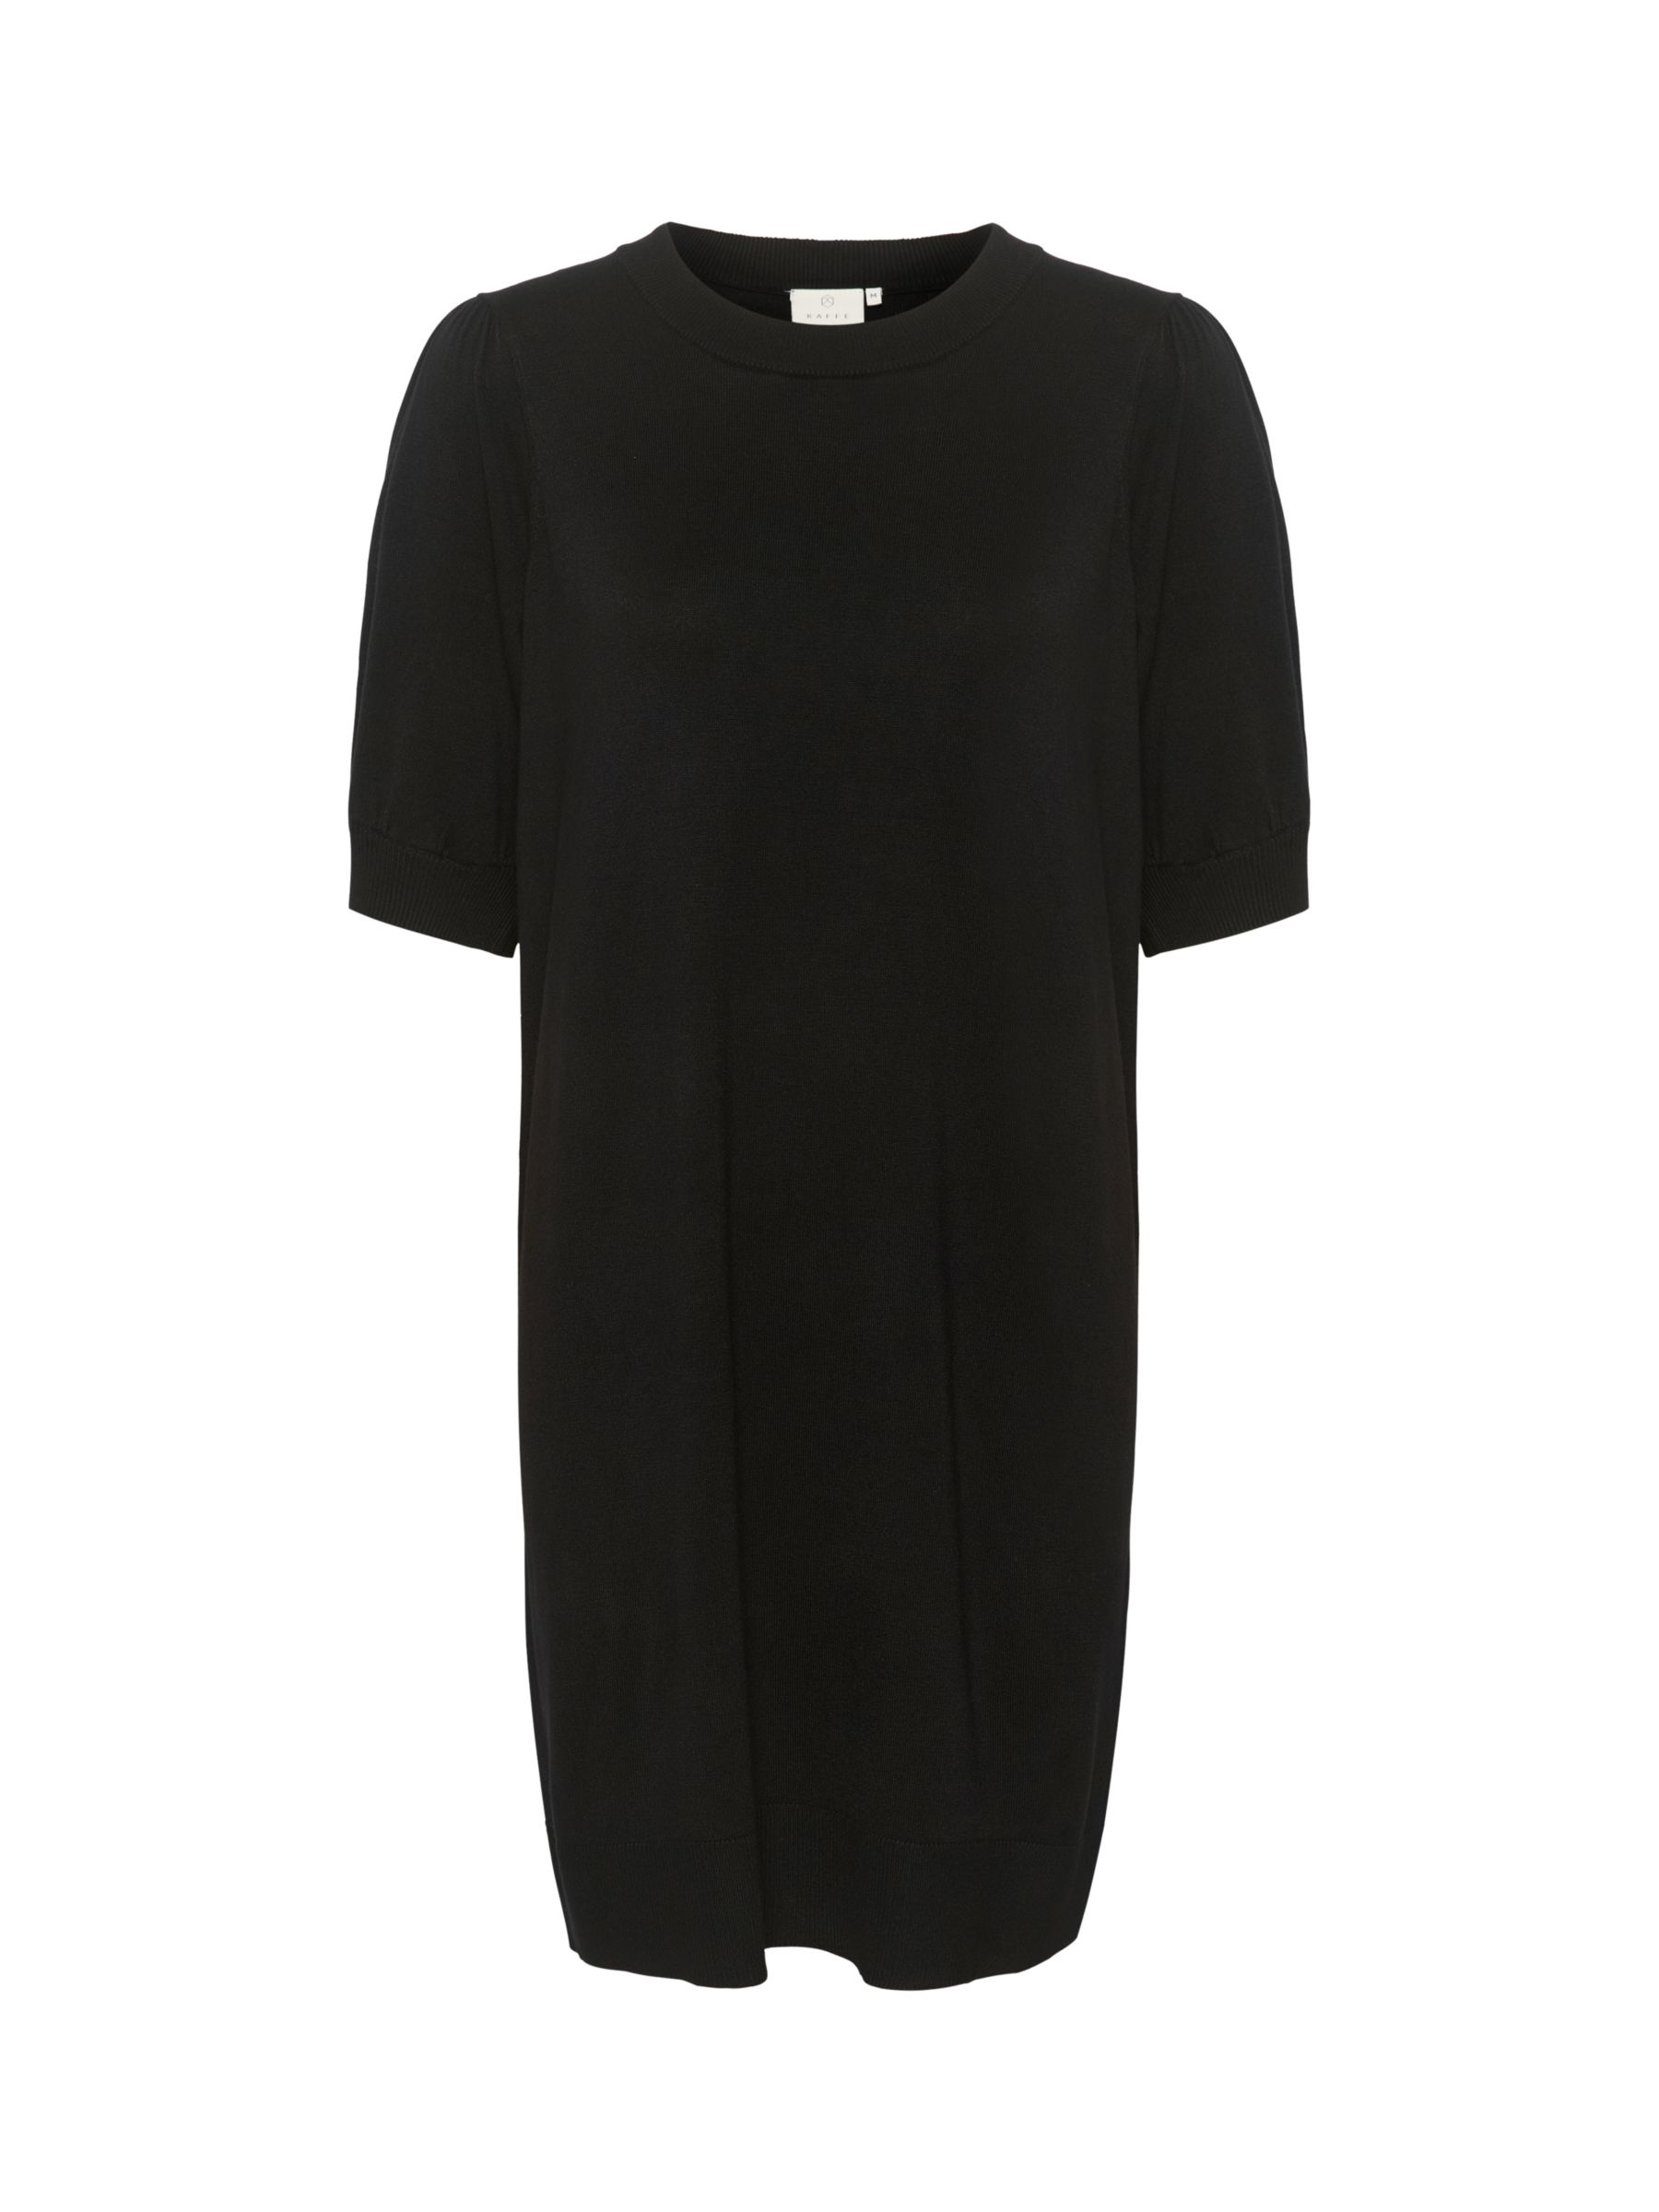 KAFFE Lizza Knit Mini Dress, Black at John Lewis & Partners